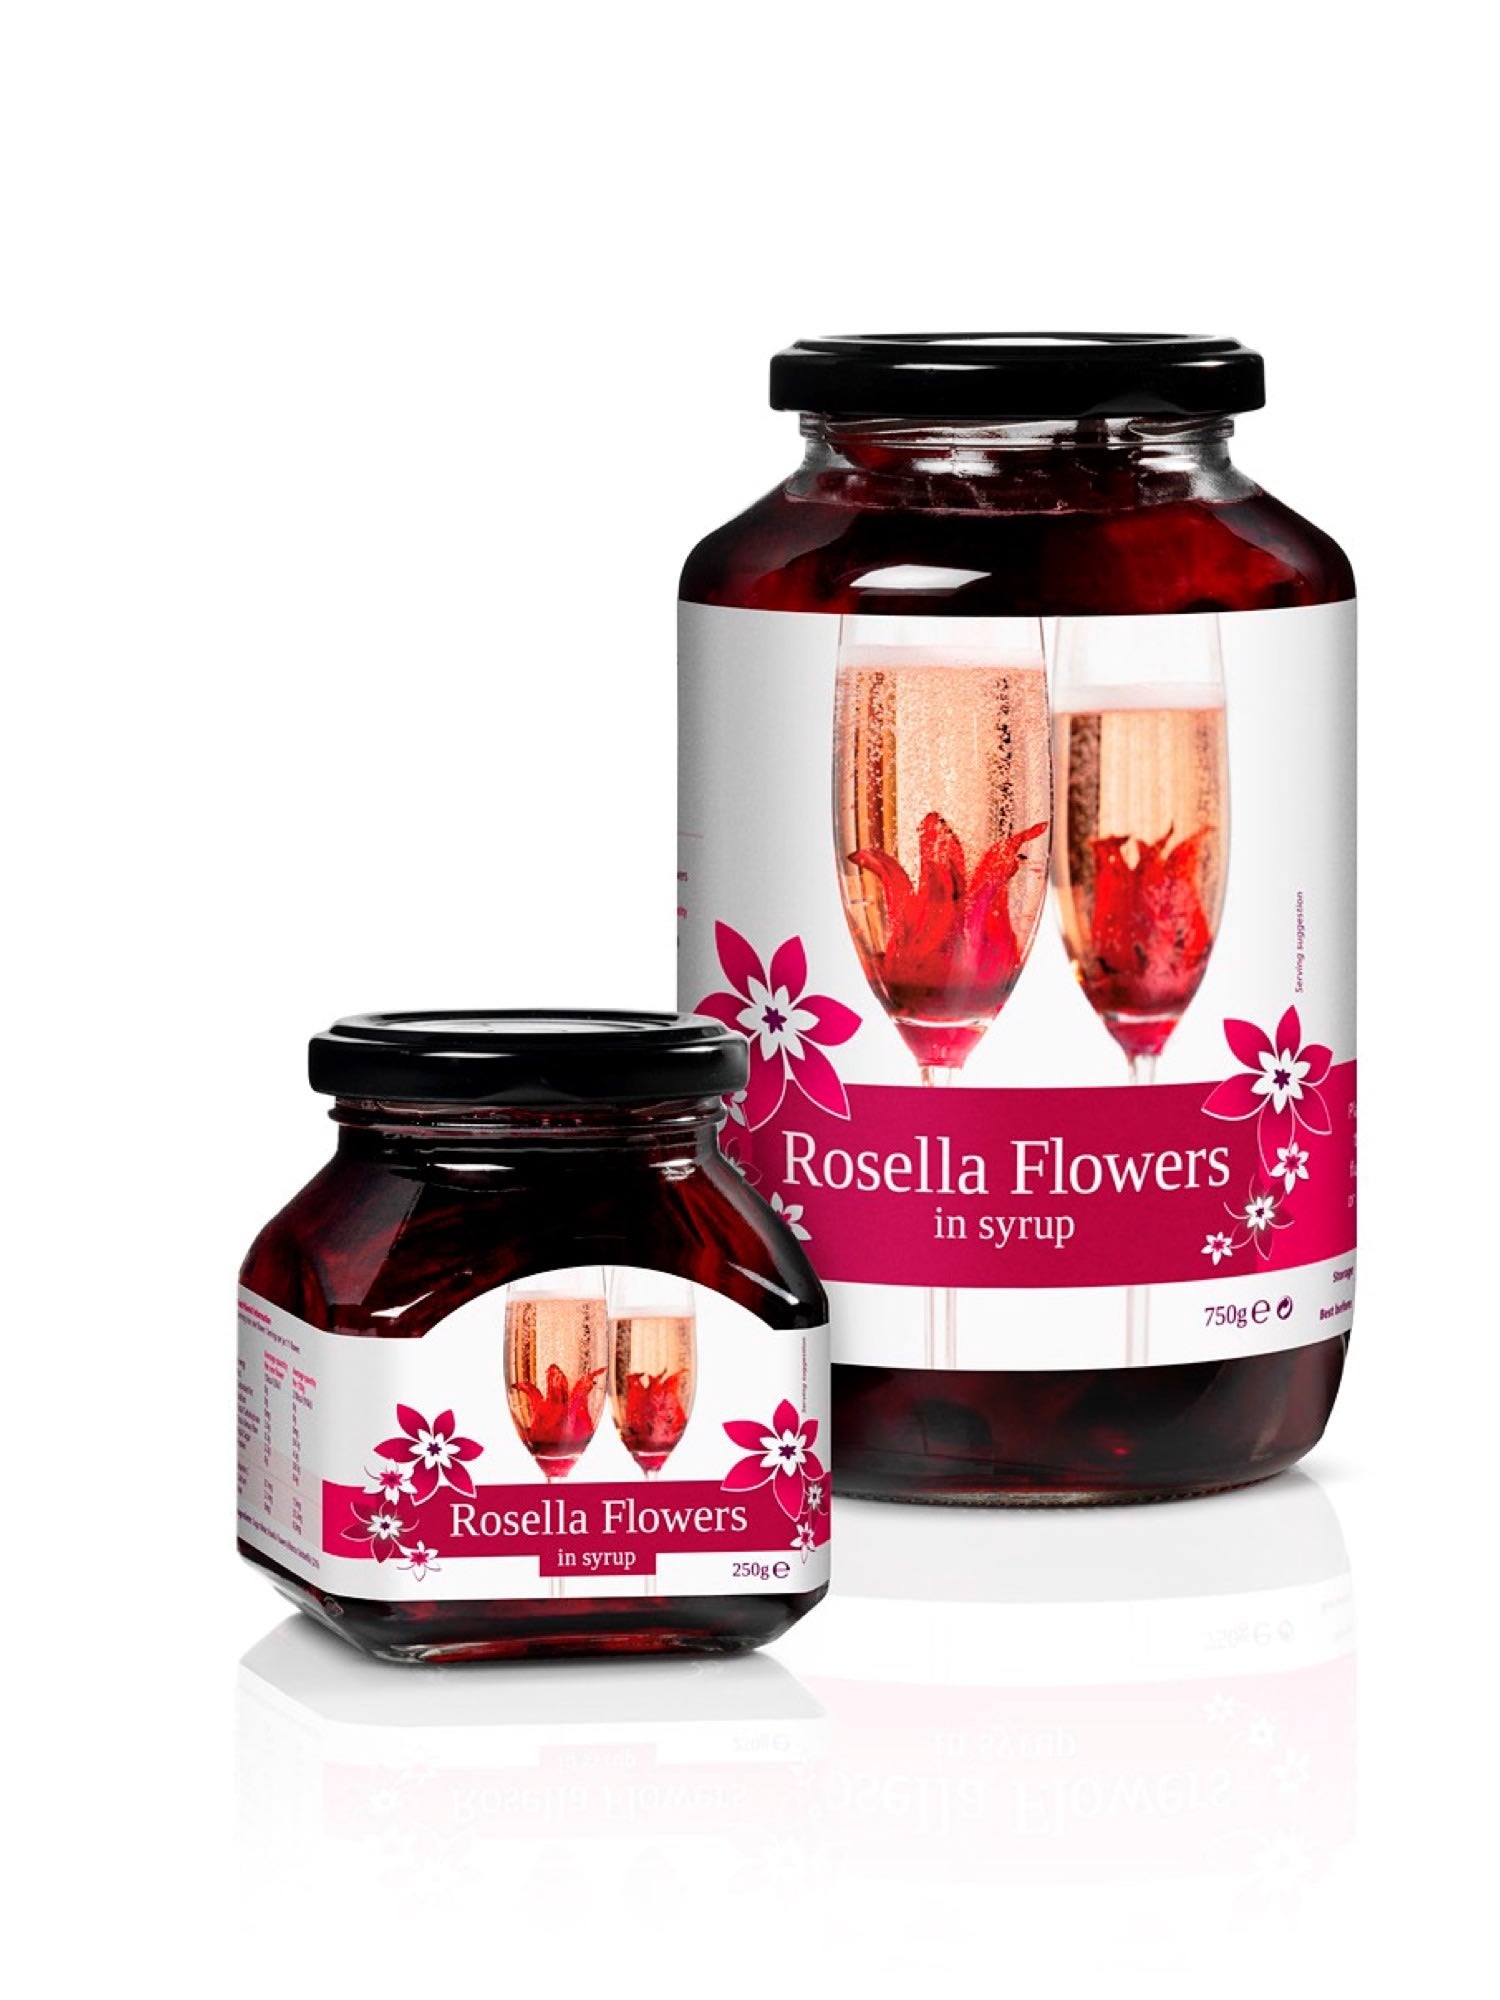 Oplev den delikate smag af rosella blomster i sirup